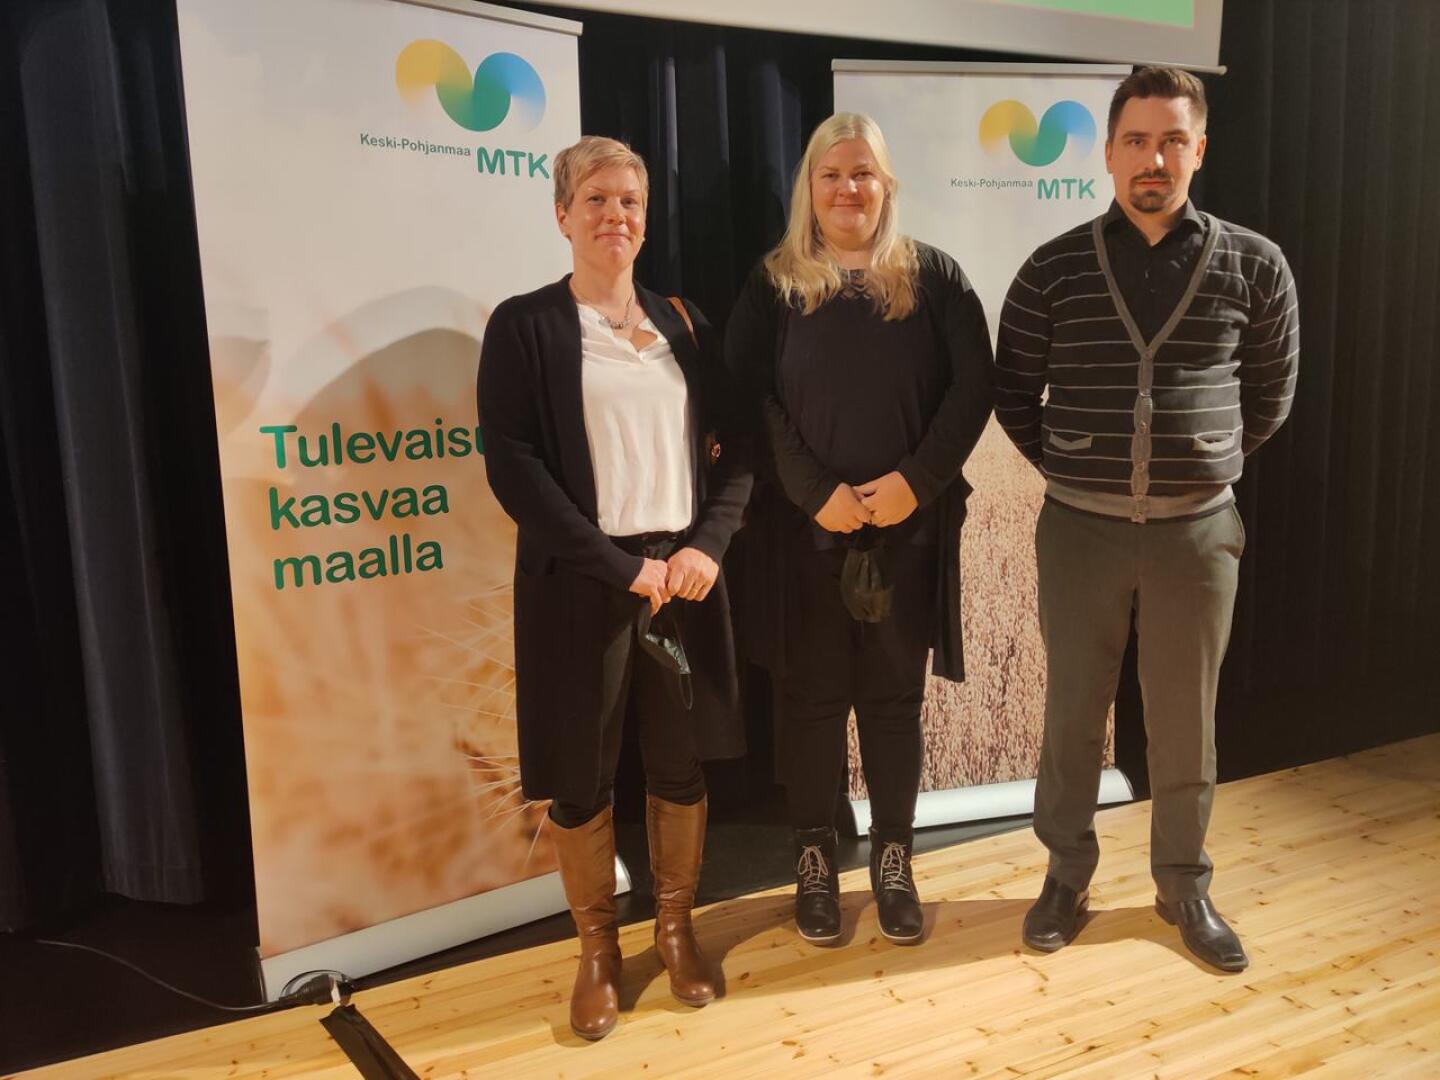 Uusia johtokunnan jäseniä. Oikealta Katja Honkonen, Anne Ilola ja Markus Kivelä.